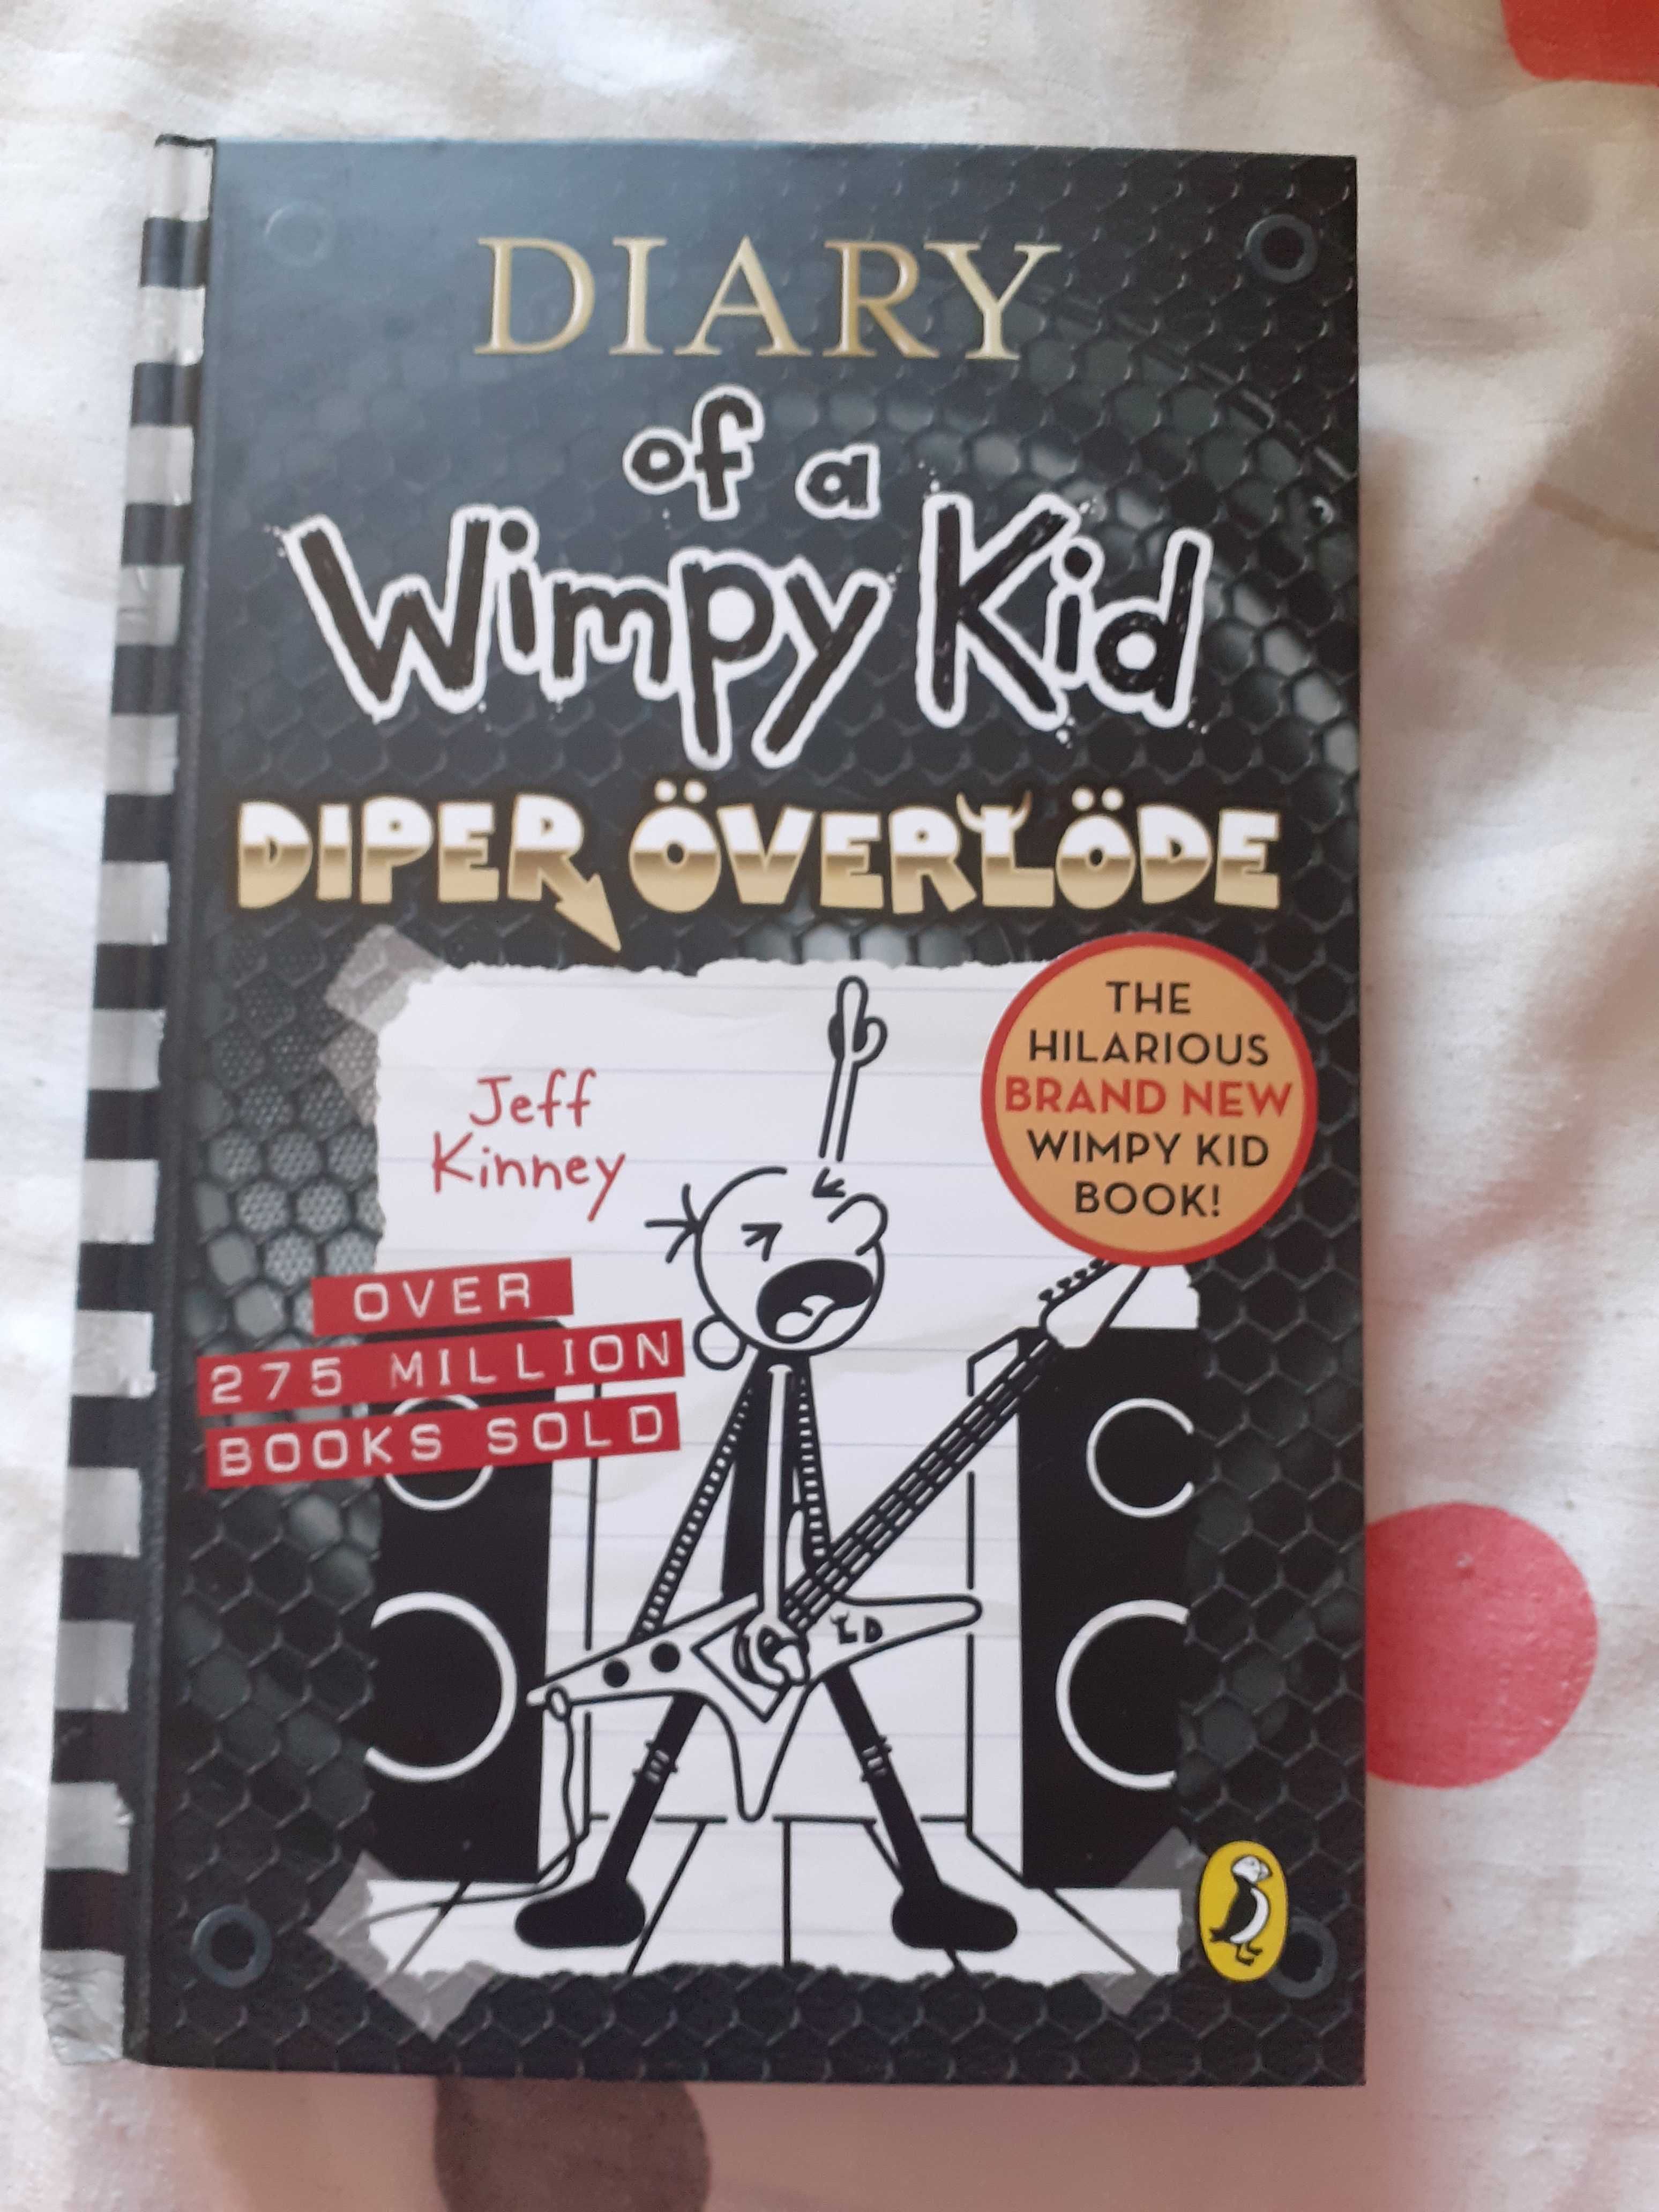 "Diary of a wimpy kid" Jeff Kinney